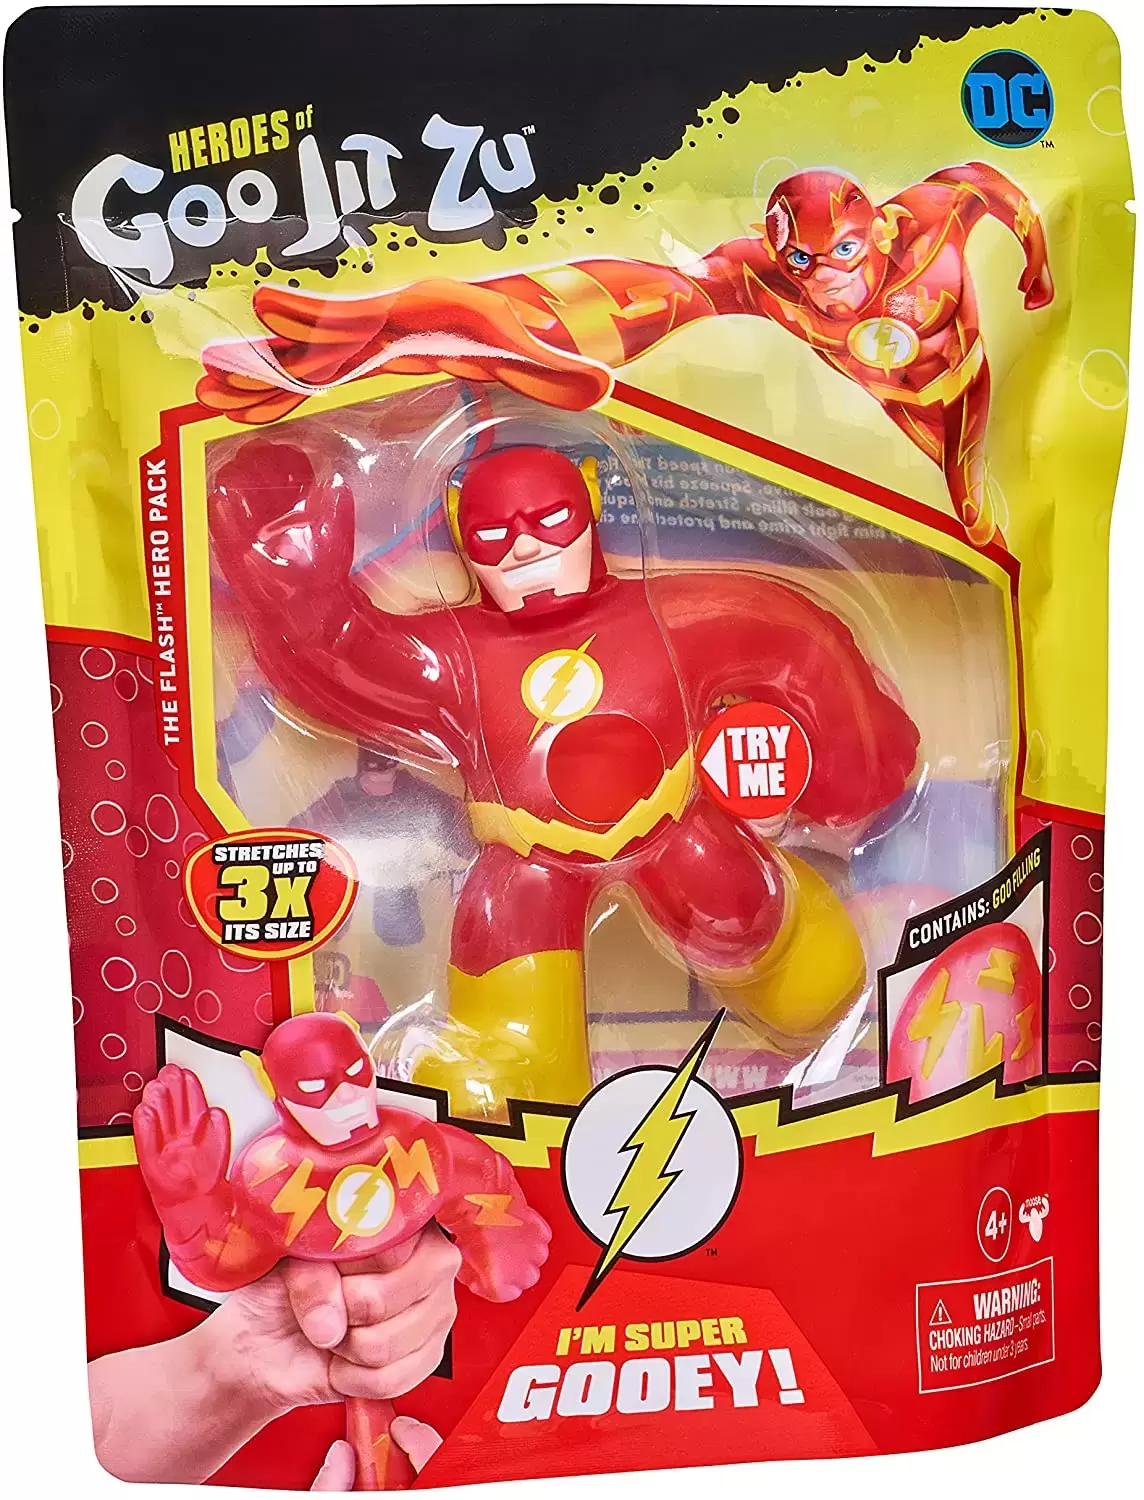 Heroes of Goo Jit Zu - DC - The Flash